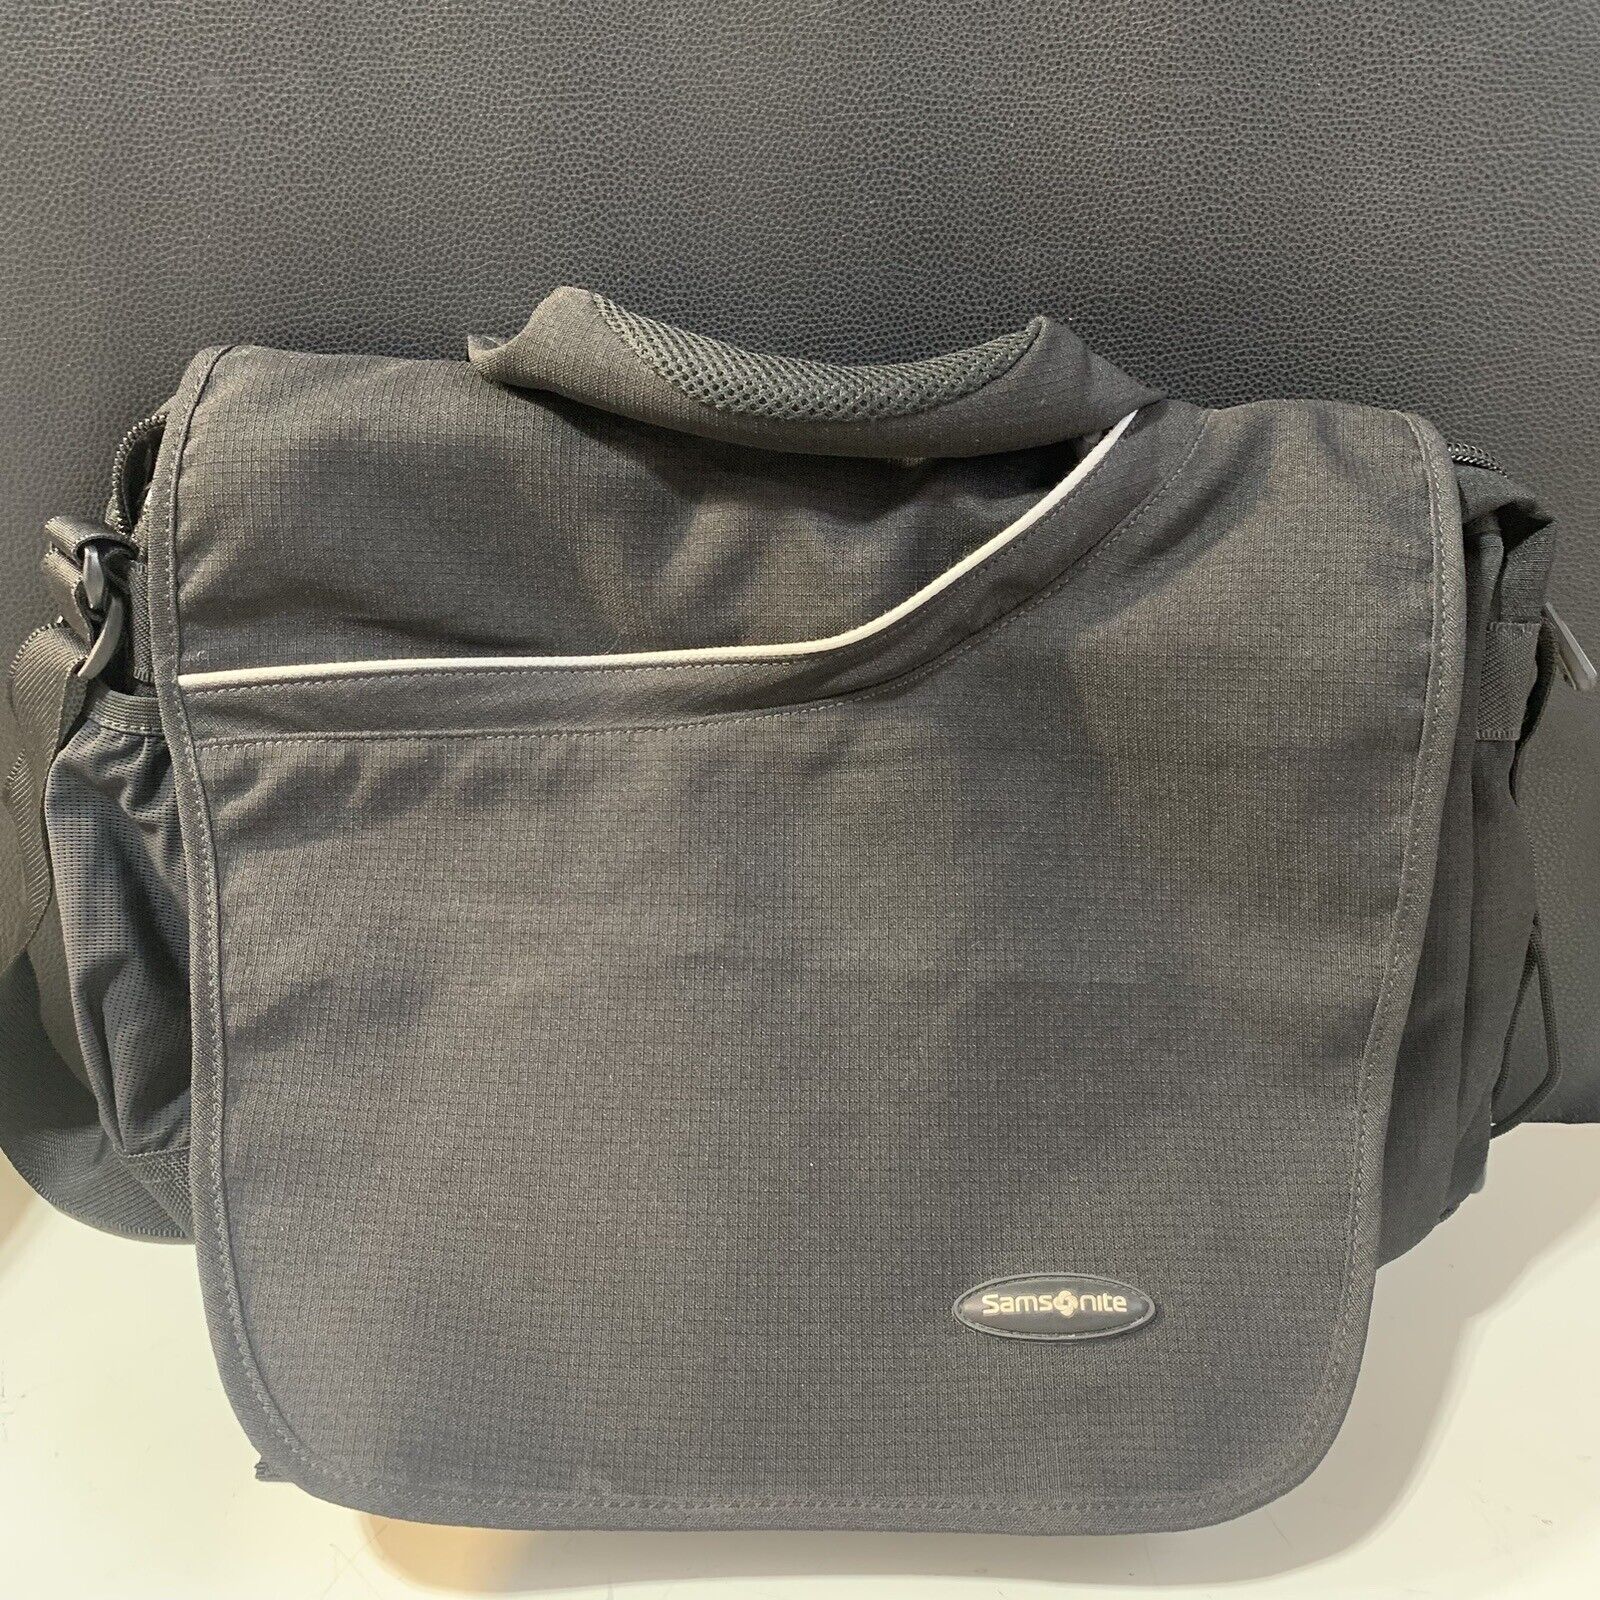 Samsonite Travel Should Bag Black Messenger Computer Handle Bag. Lightly Used.